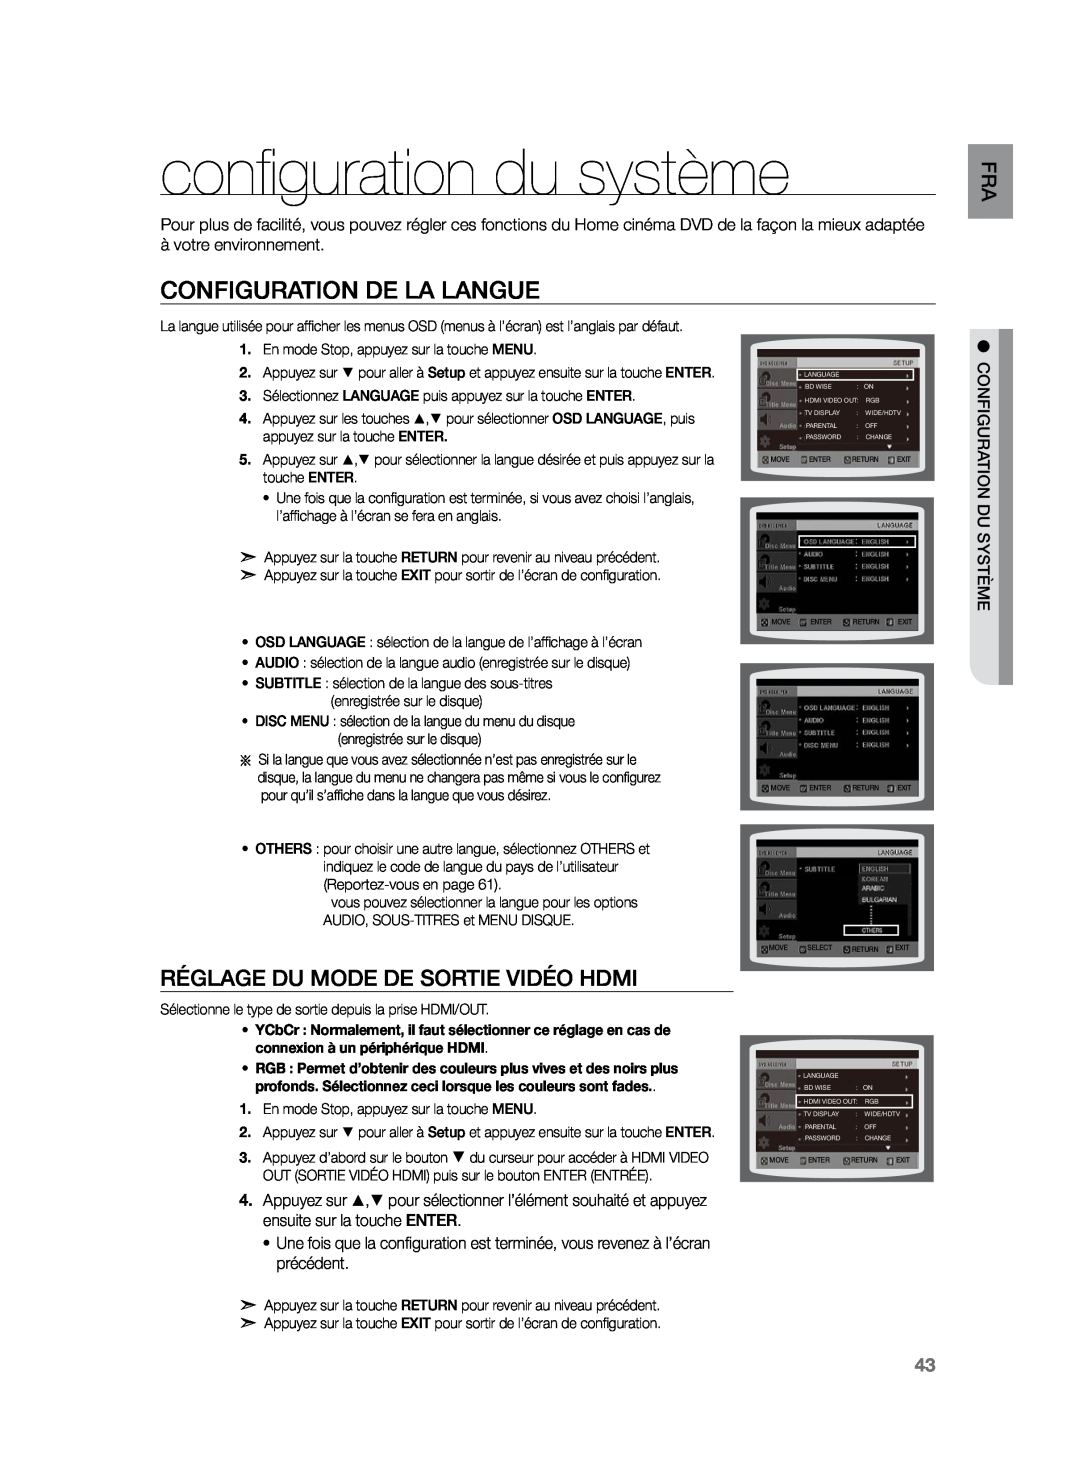 Samsung HT-TZ225R/XEF manual configuration du système, Configuration de la langue, Réglage Du Mode De Sortie Vidéo Hdmi 